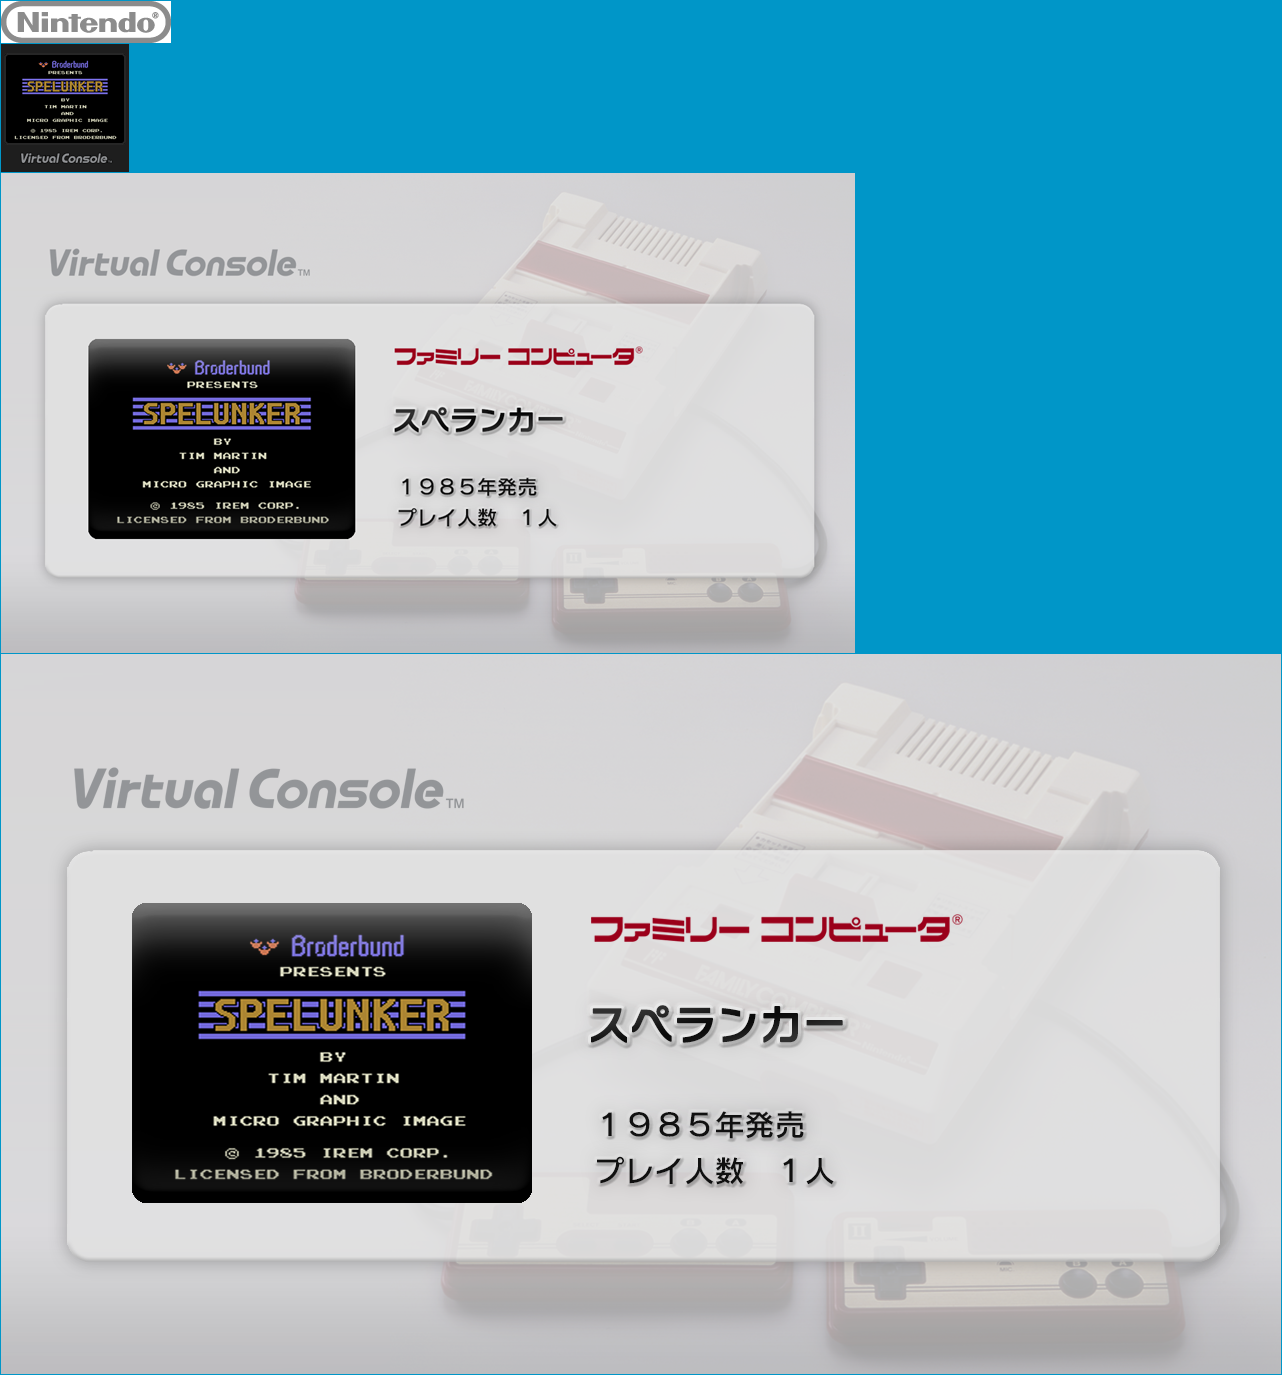 Virtual Console - Spelunker